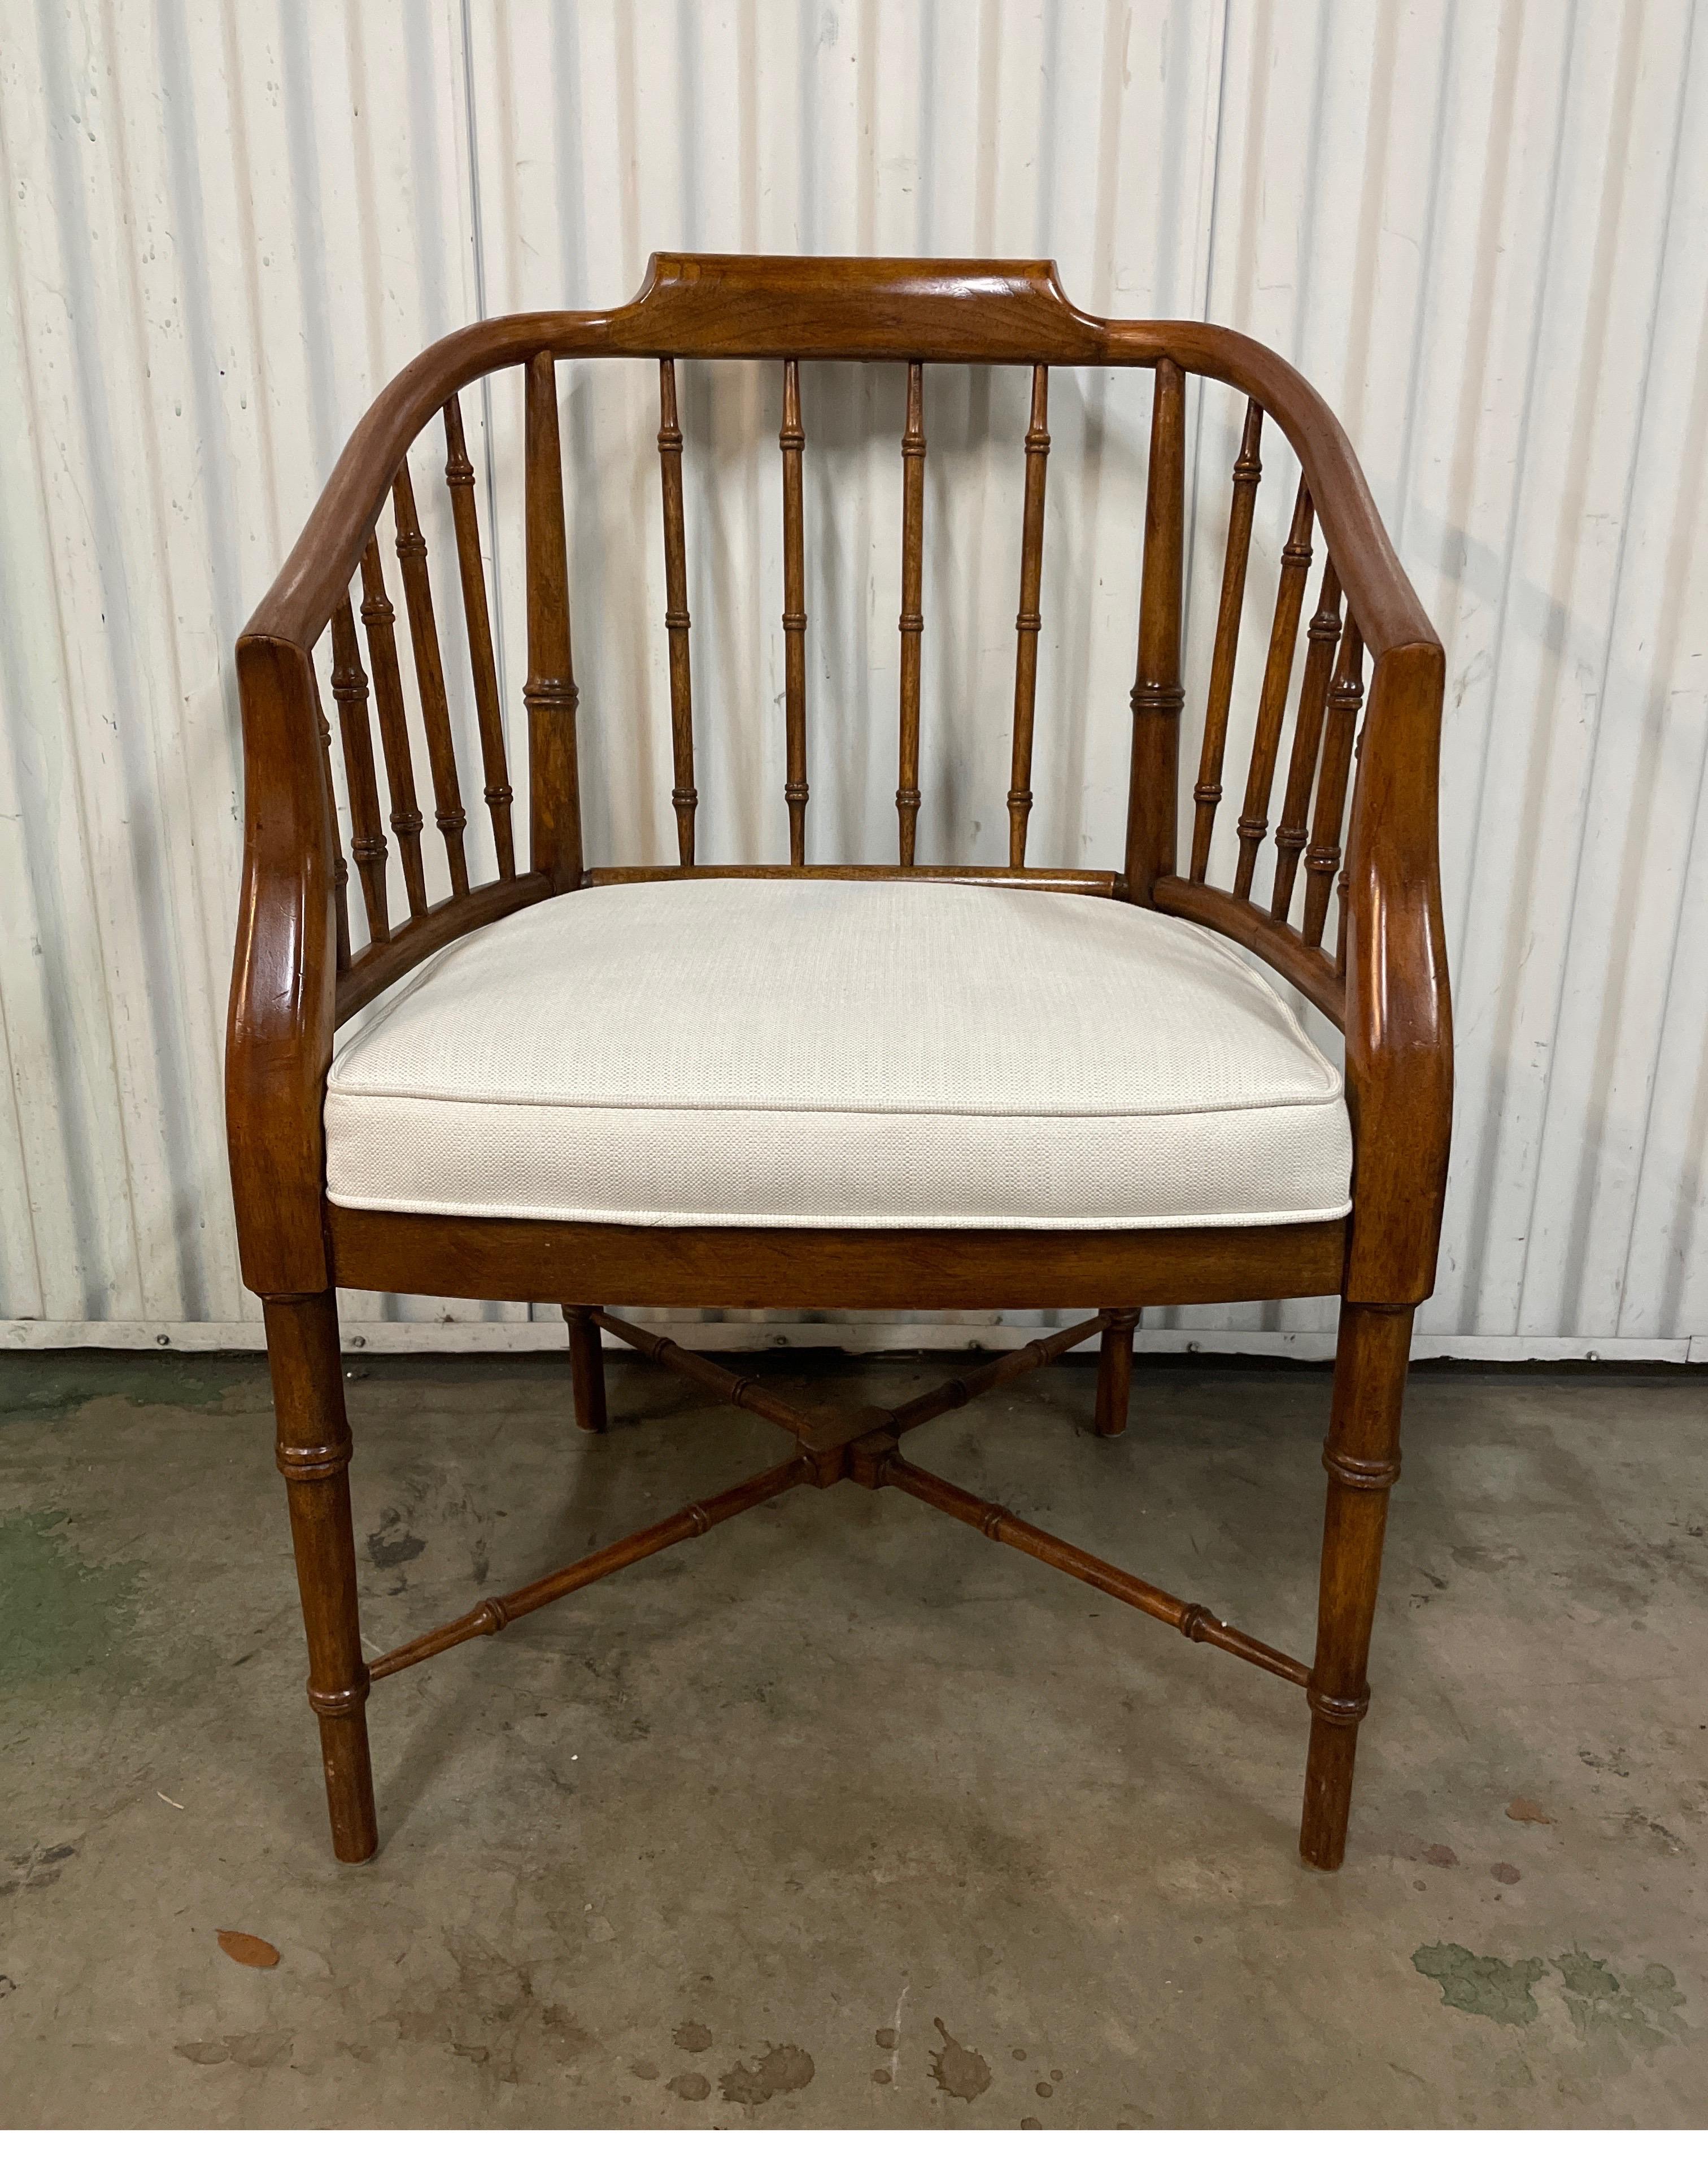 Vintage-Sessel aus Bambusimitat mit neu gepolstertem Sitzkissen.